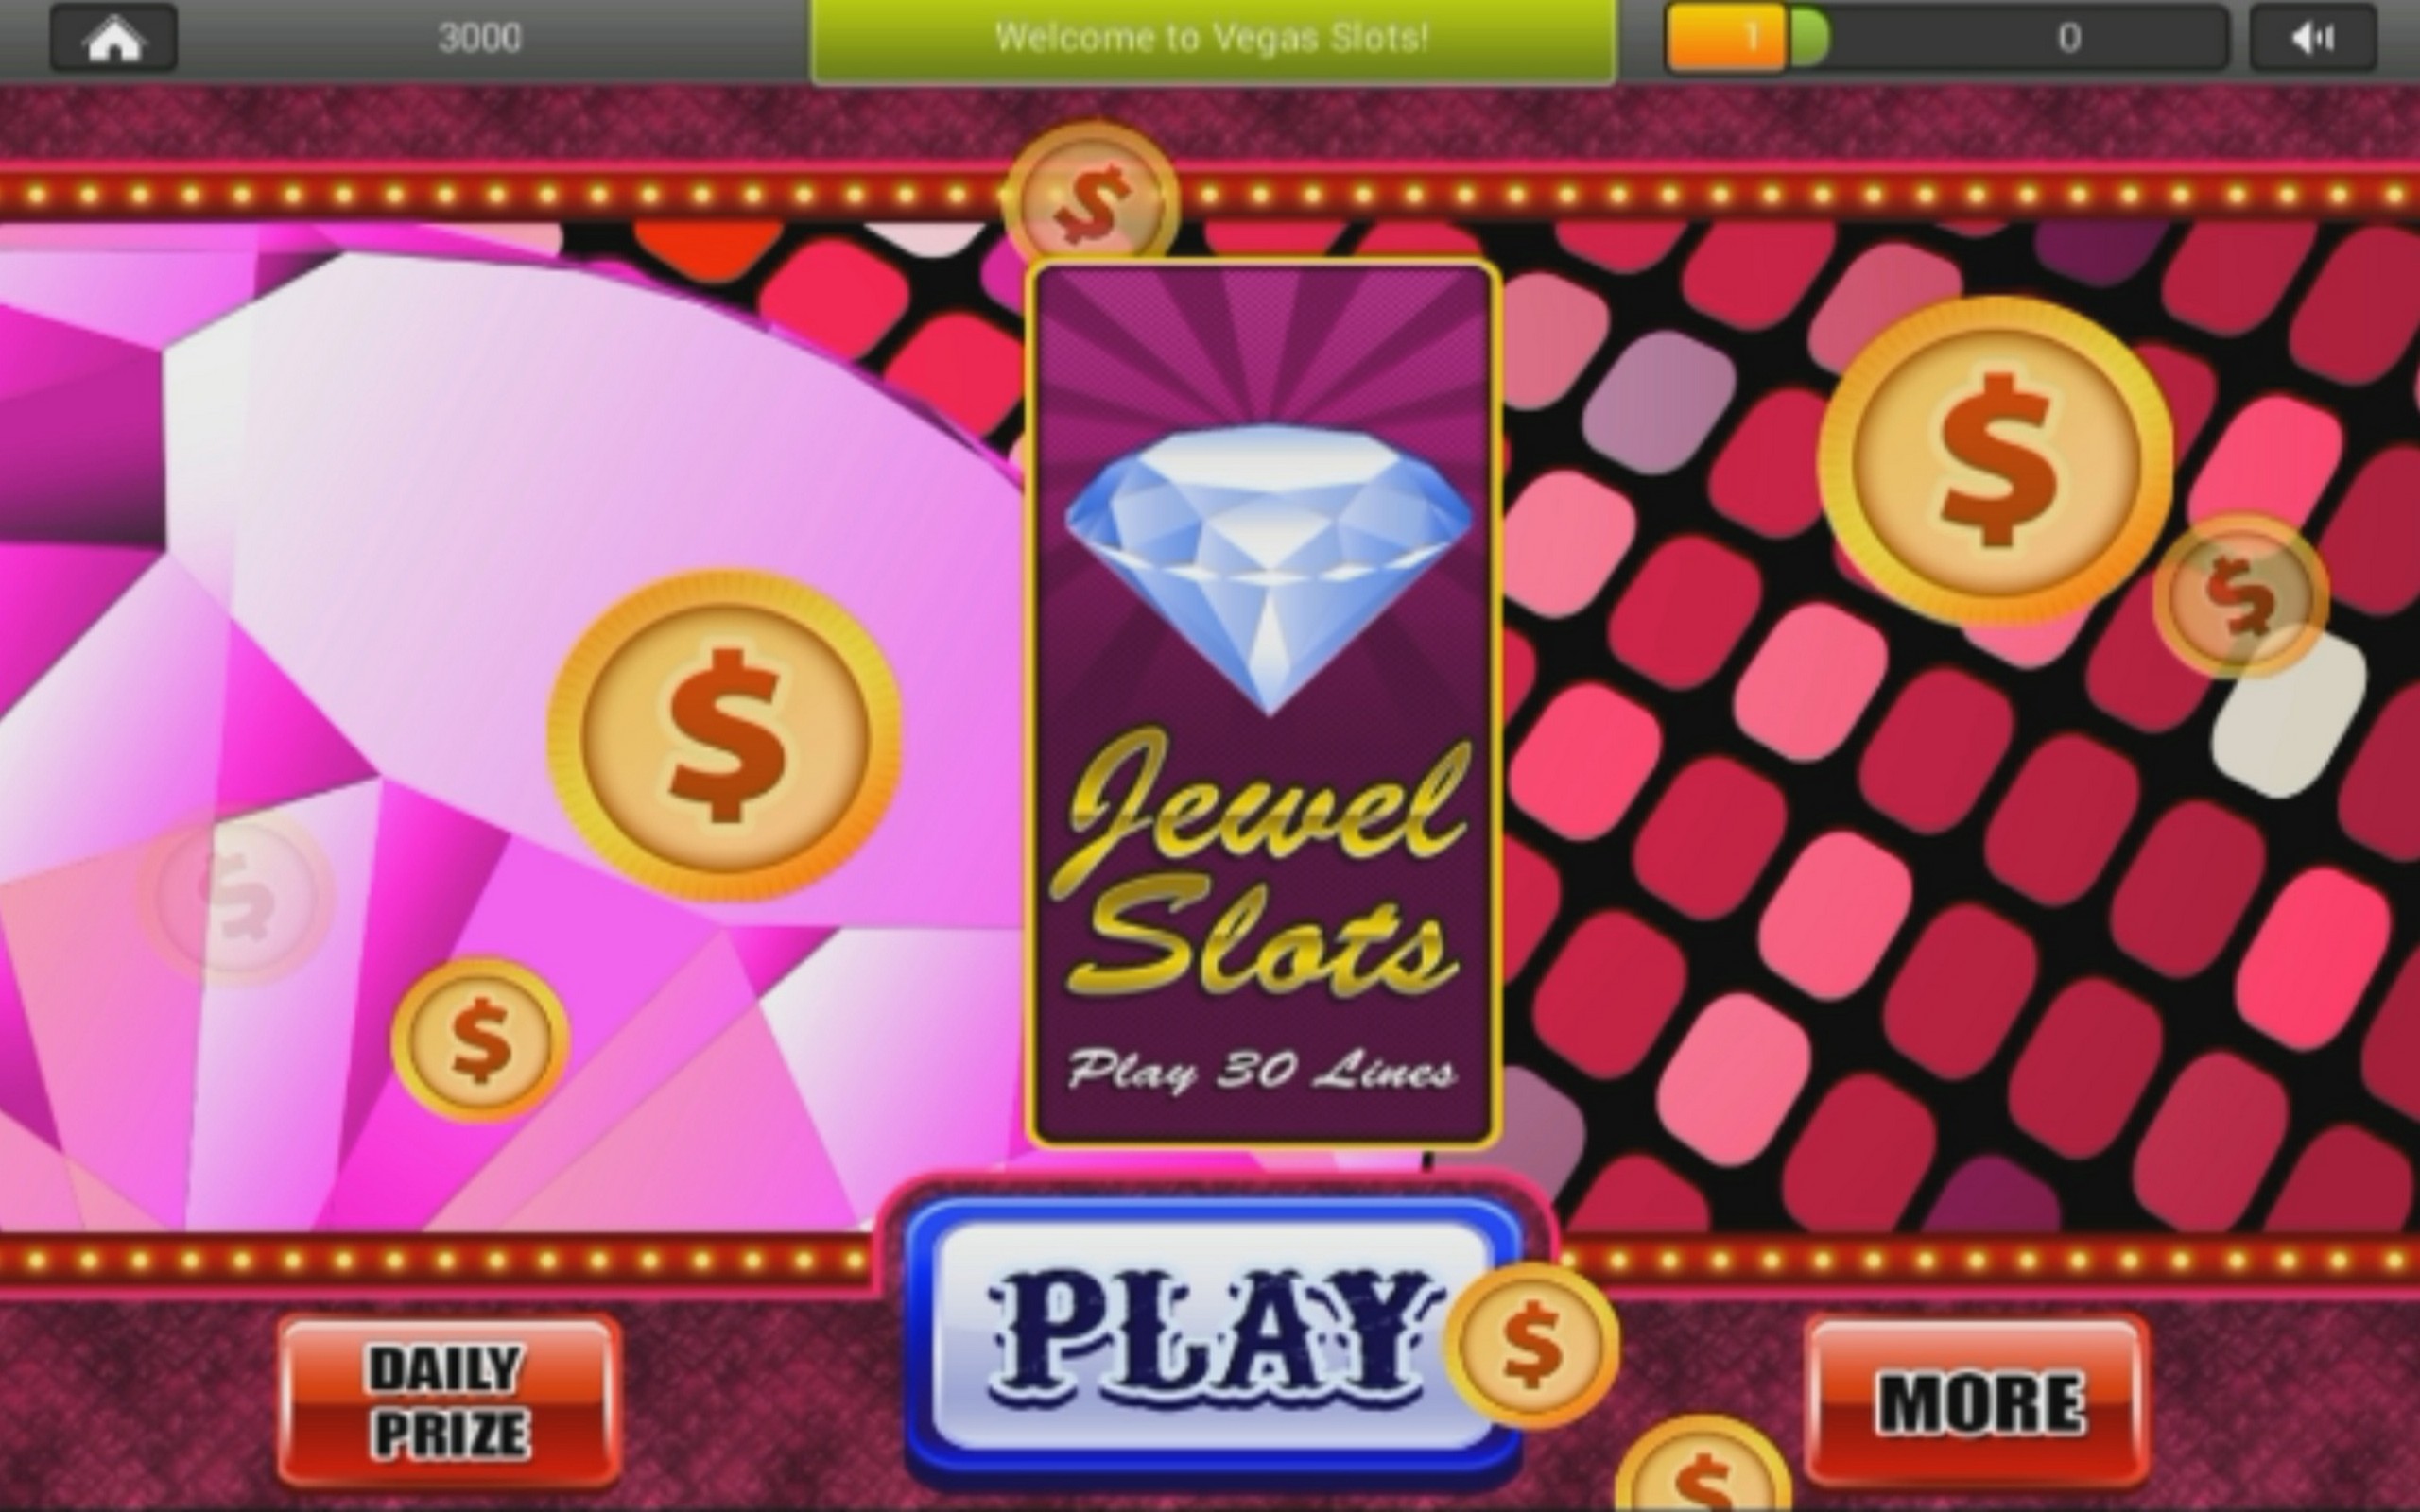 Casino gratis estrella juegos x 749648